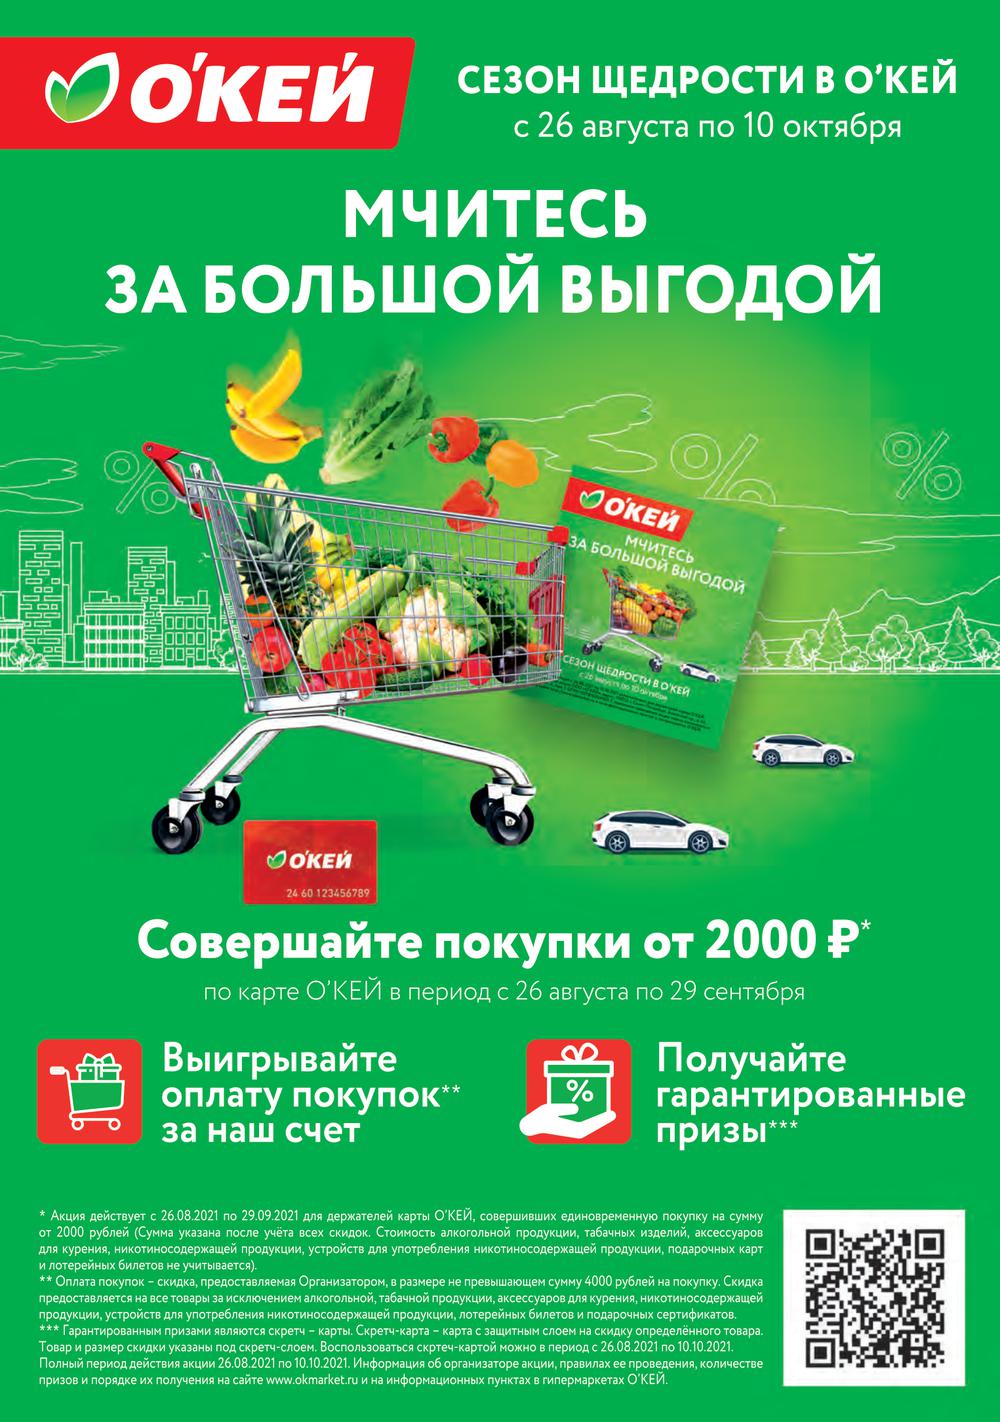 Акции в гипермаркетах санкт петербурга сегодня